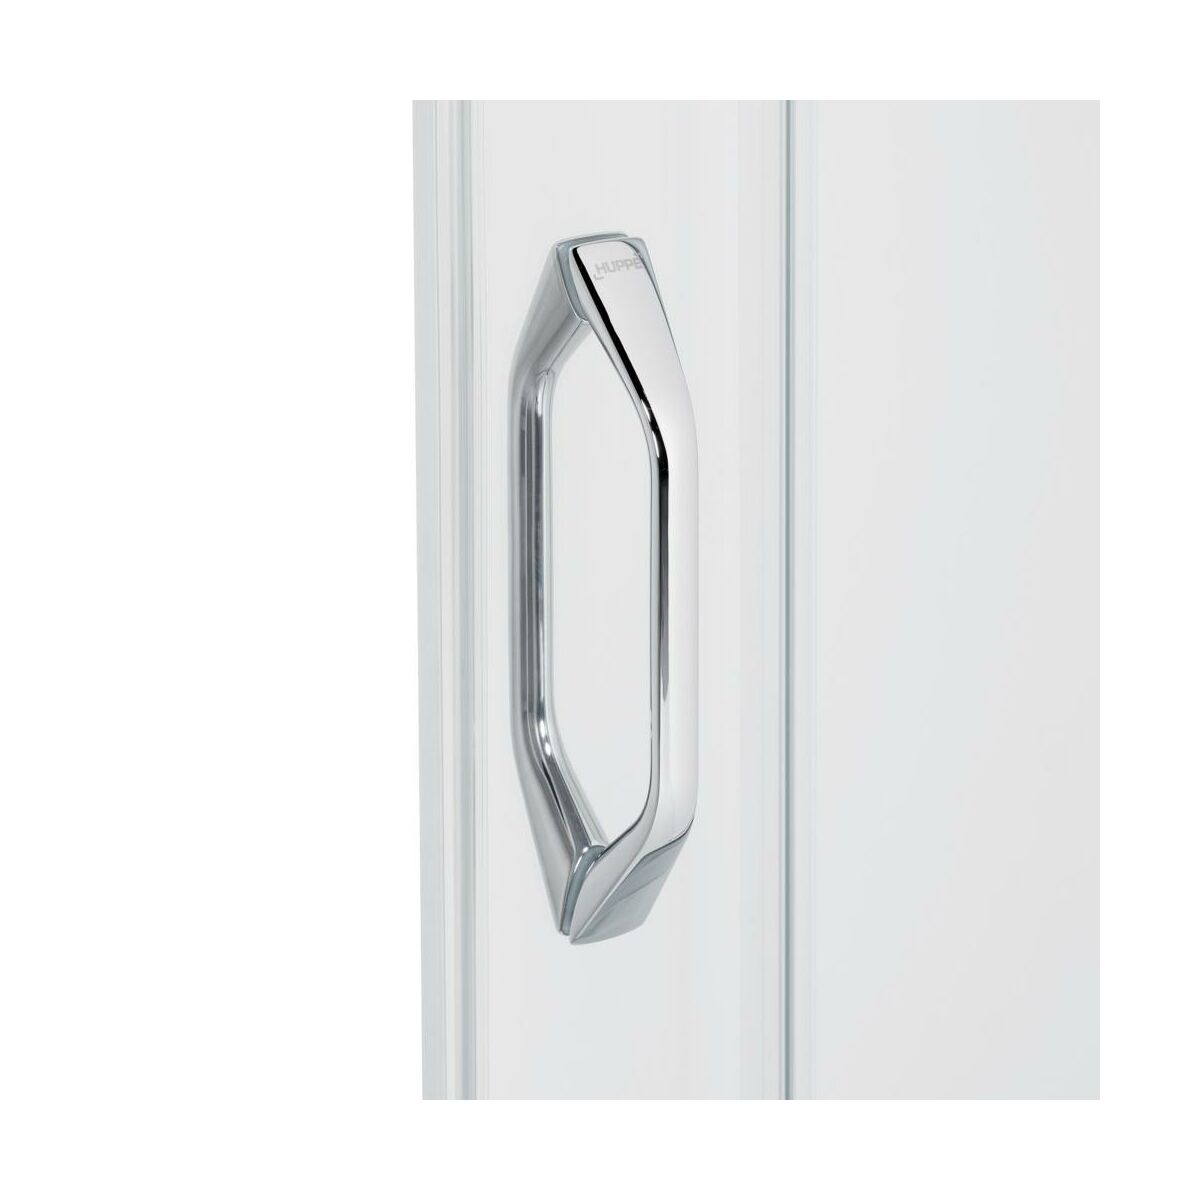 Drzwi prysznicowe X1 Flex 120 X 190 Huppe